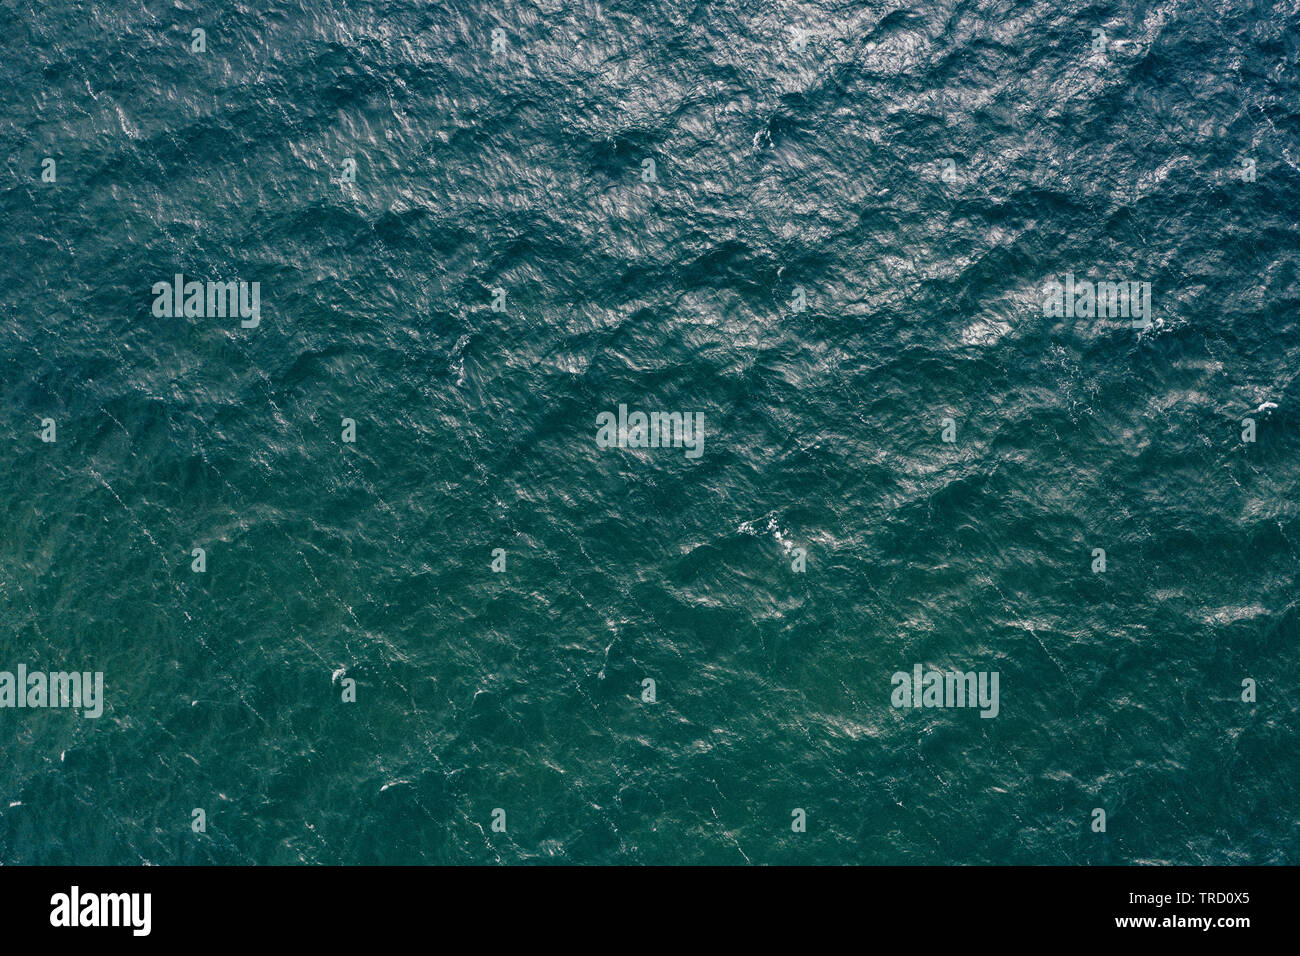 Di tipo "topdown" vista della superficie dell'acqua. Foto Stock